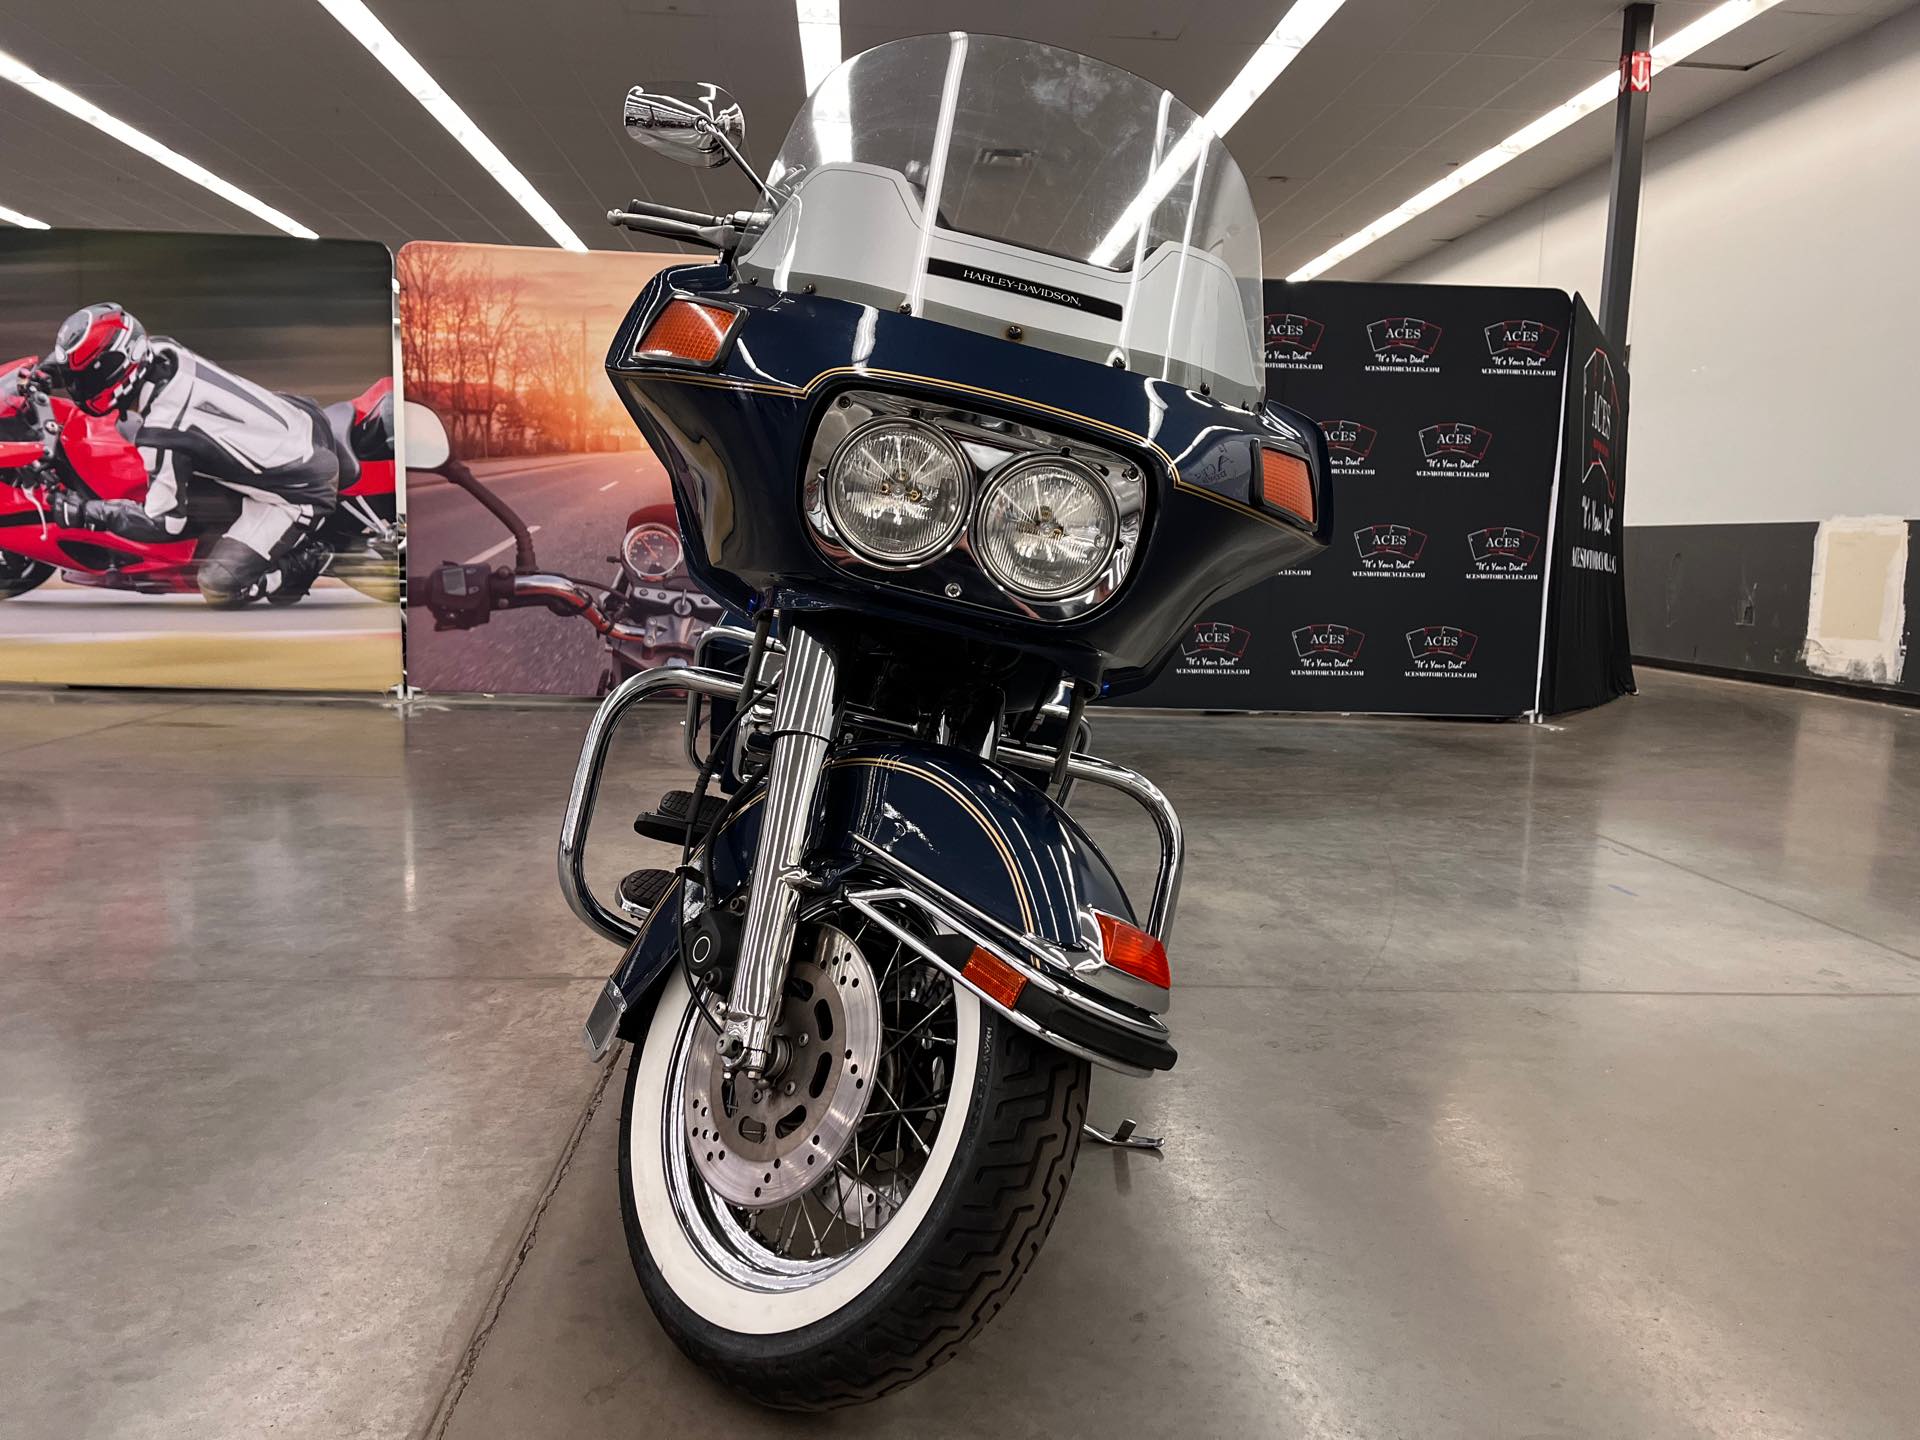 1986 Harley-Davidson FLHT at Aces Motorcycles - Denver